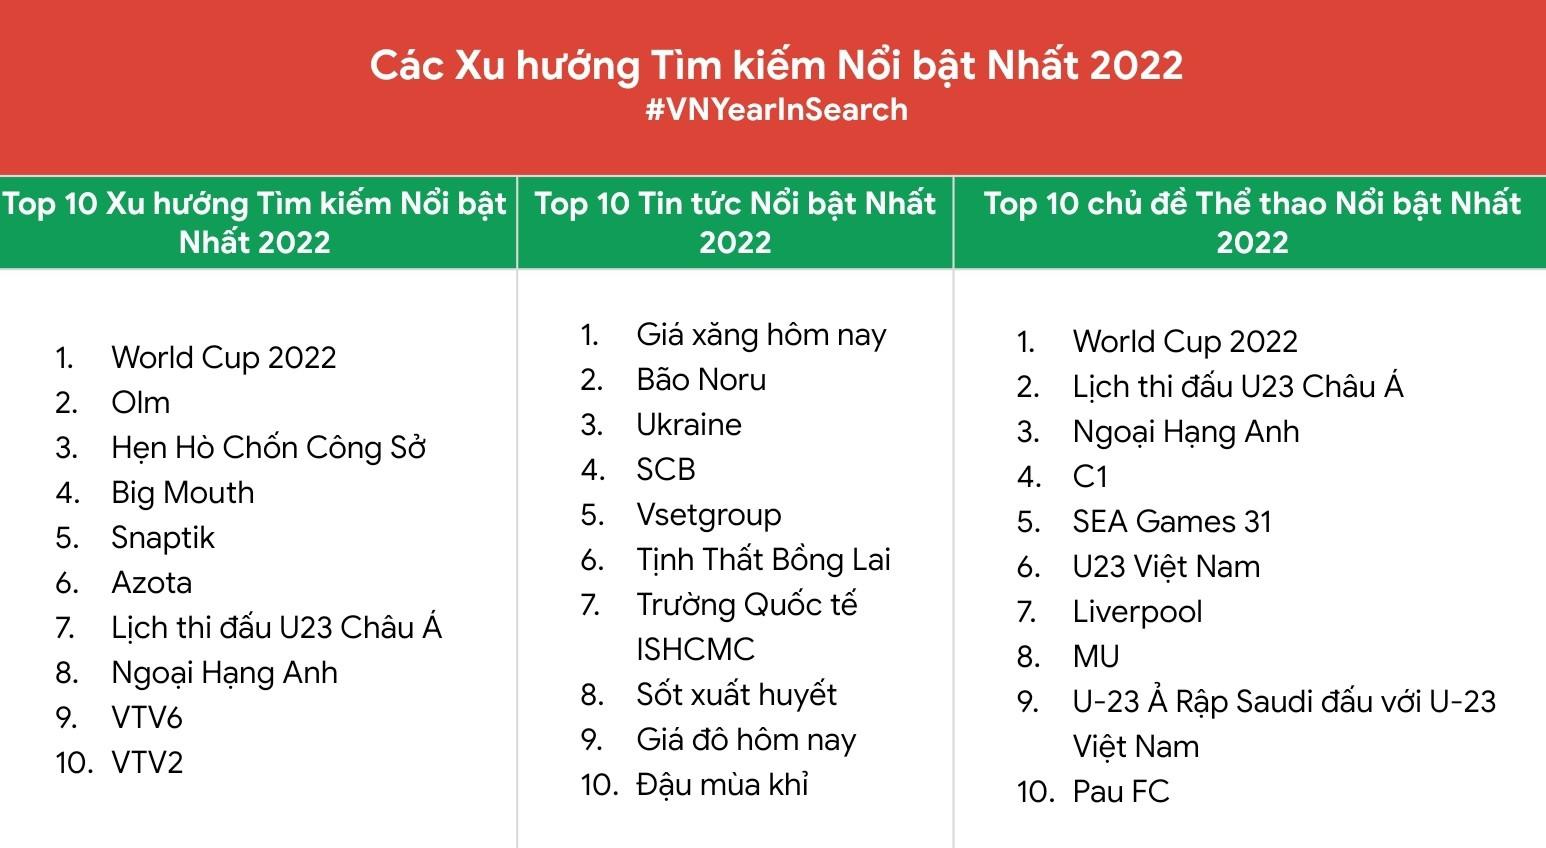 đứng đầu danh sách top 10 xu hướng tìm kiếm nổi bật là từ khóa “World Cup 2022”